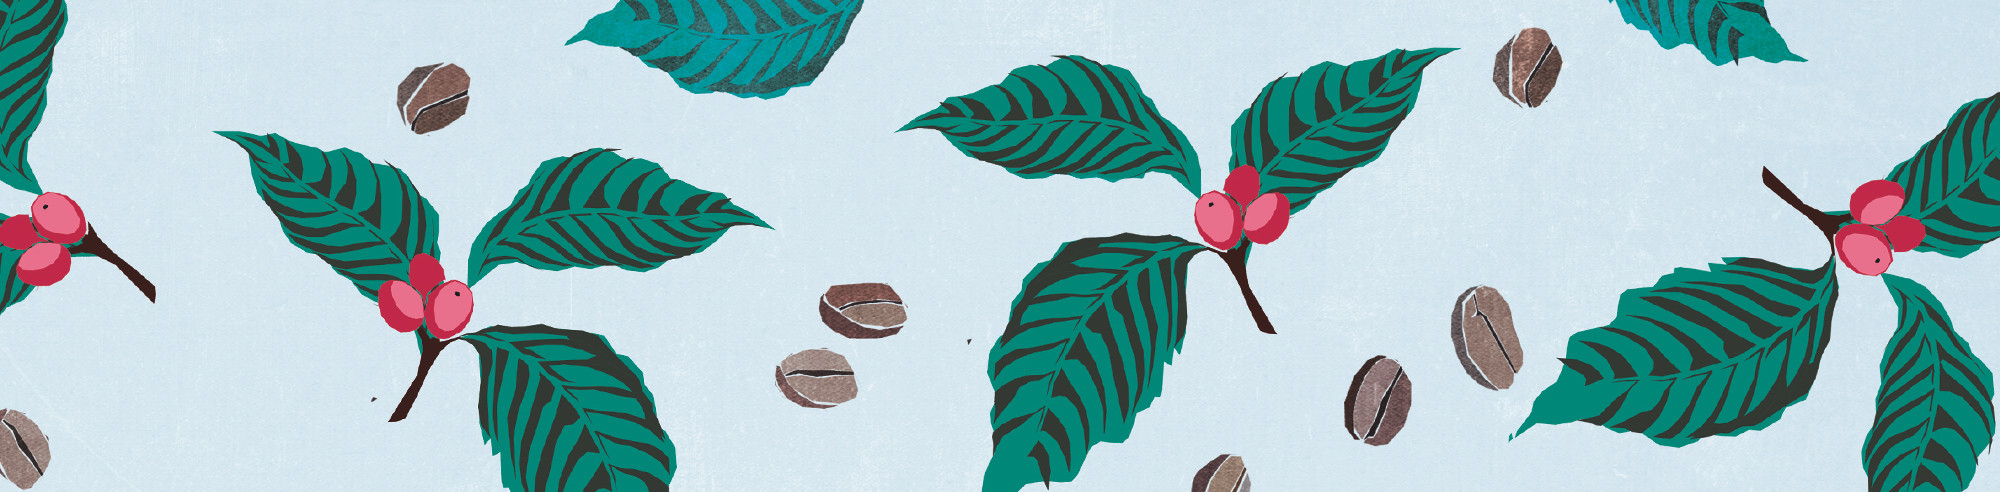 Kaffeestrauch Blätter und Bohnen als Hintergrund